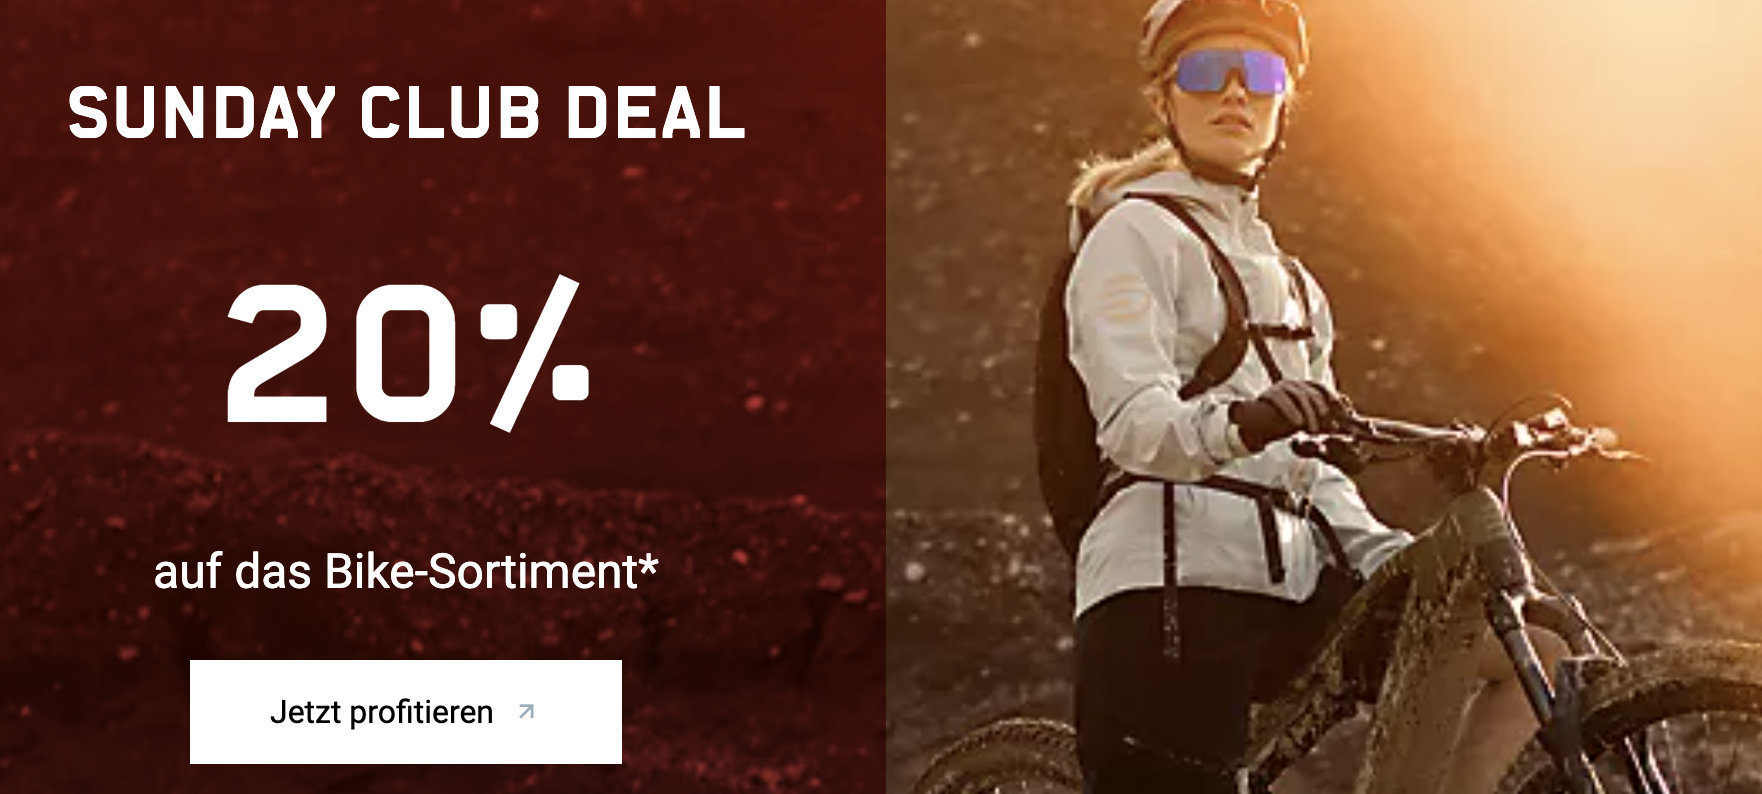 Sunday Club Deal 20 % auf das Bike-Sortiment bei Ochsner Sport